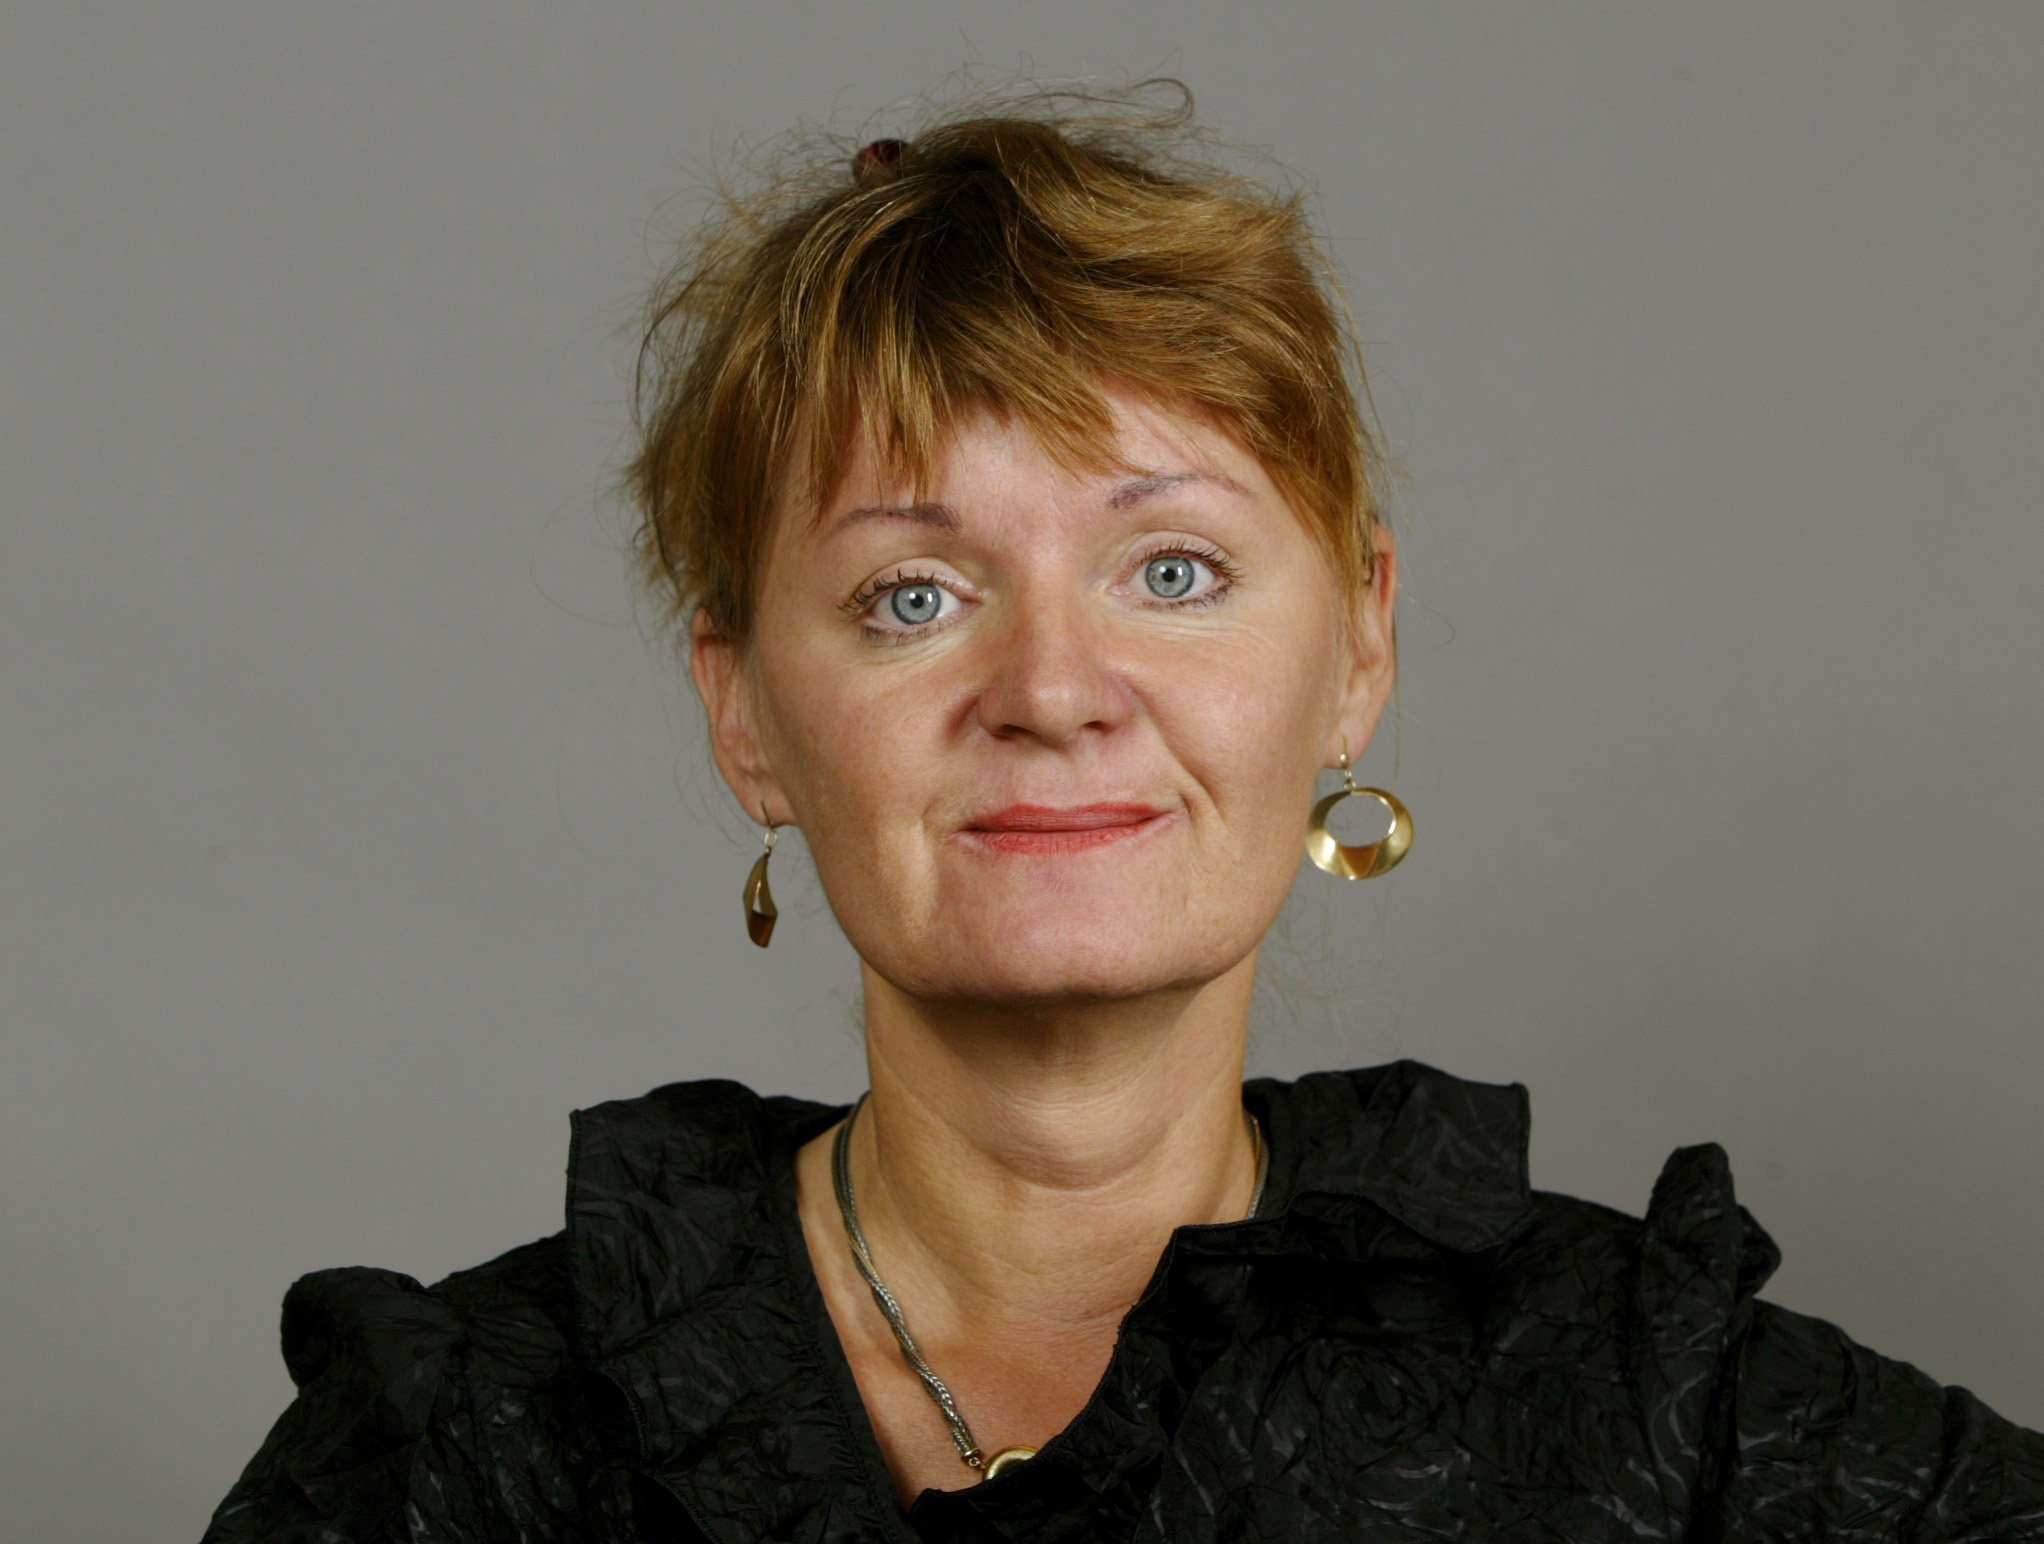 Feminism, Riksdagsvalet 2010, Feministiskt initiativ, Gudrun Schyman, Sverigedemokraterna, Carina Hägg, Alliansen